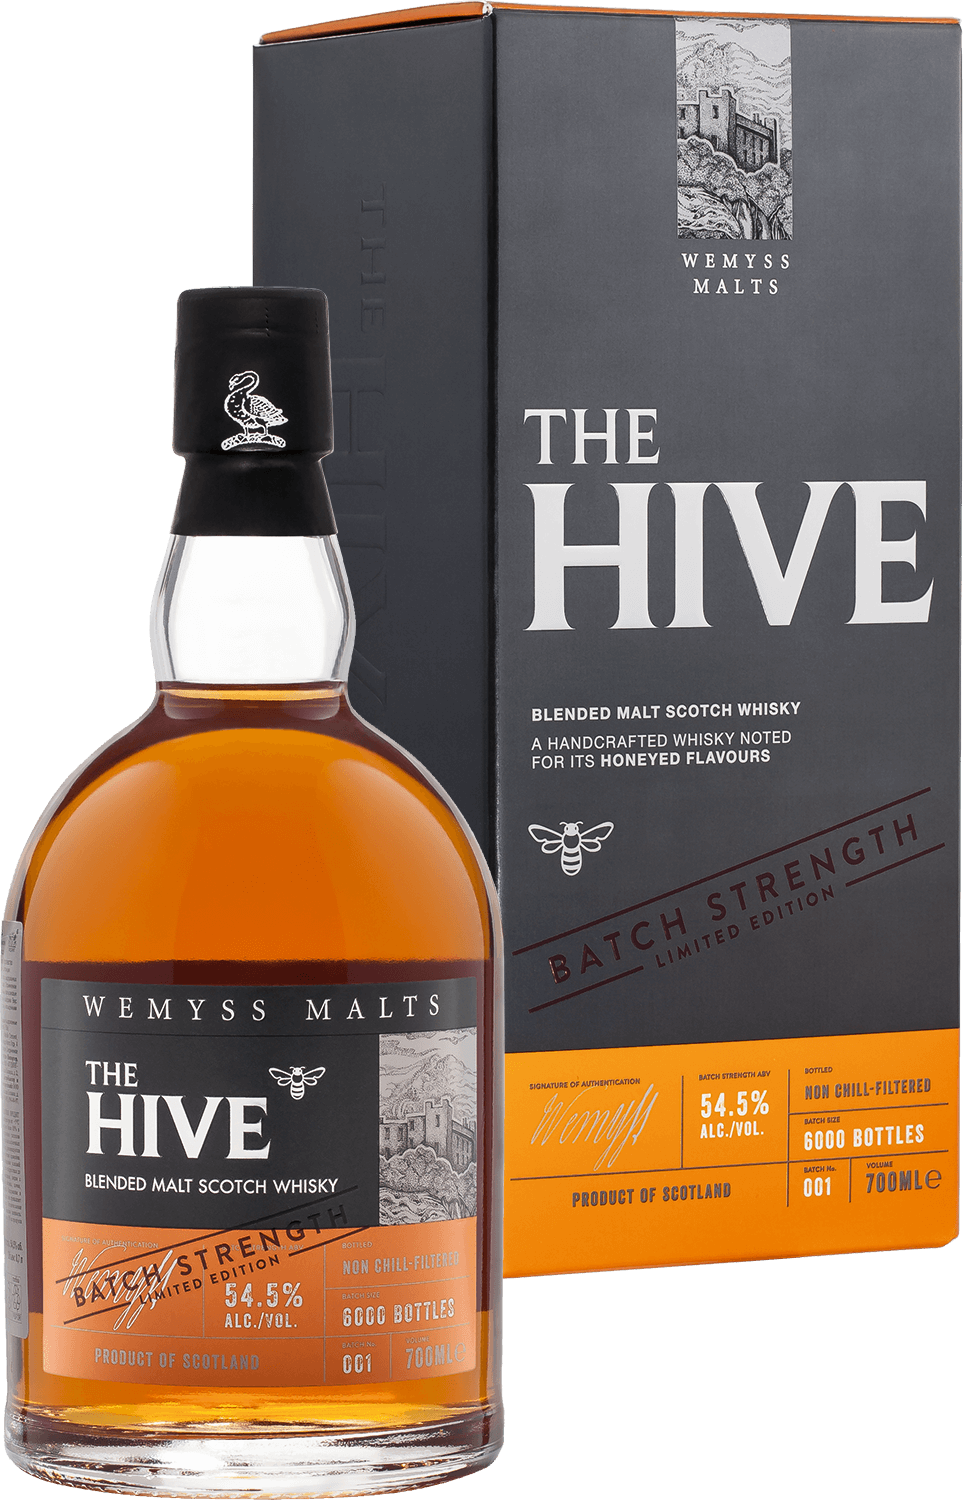 The Hive Batch Strength Wemyss Malts blended malt scotch whisky